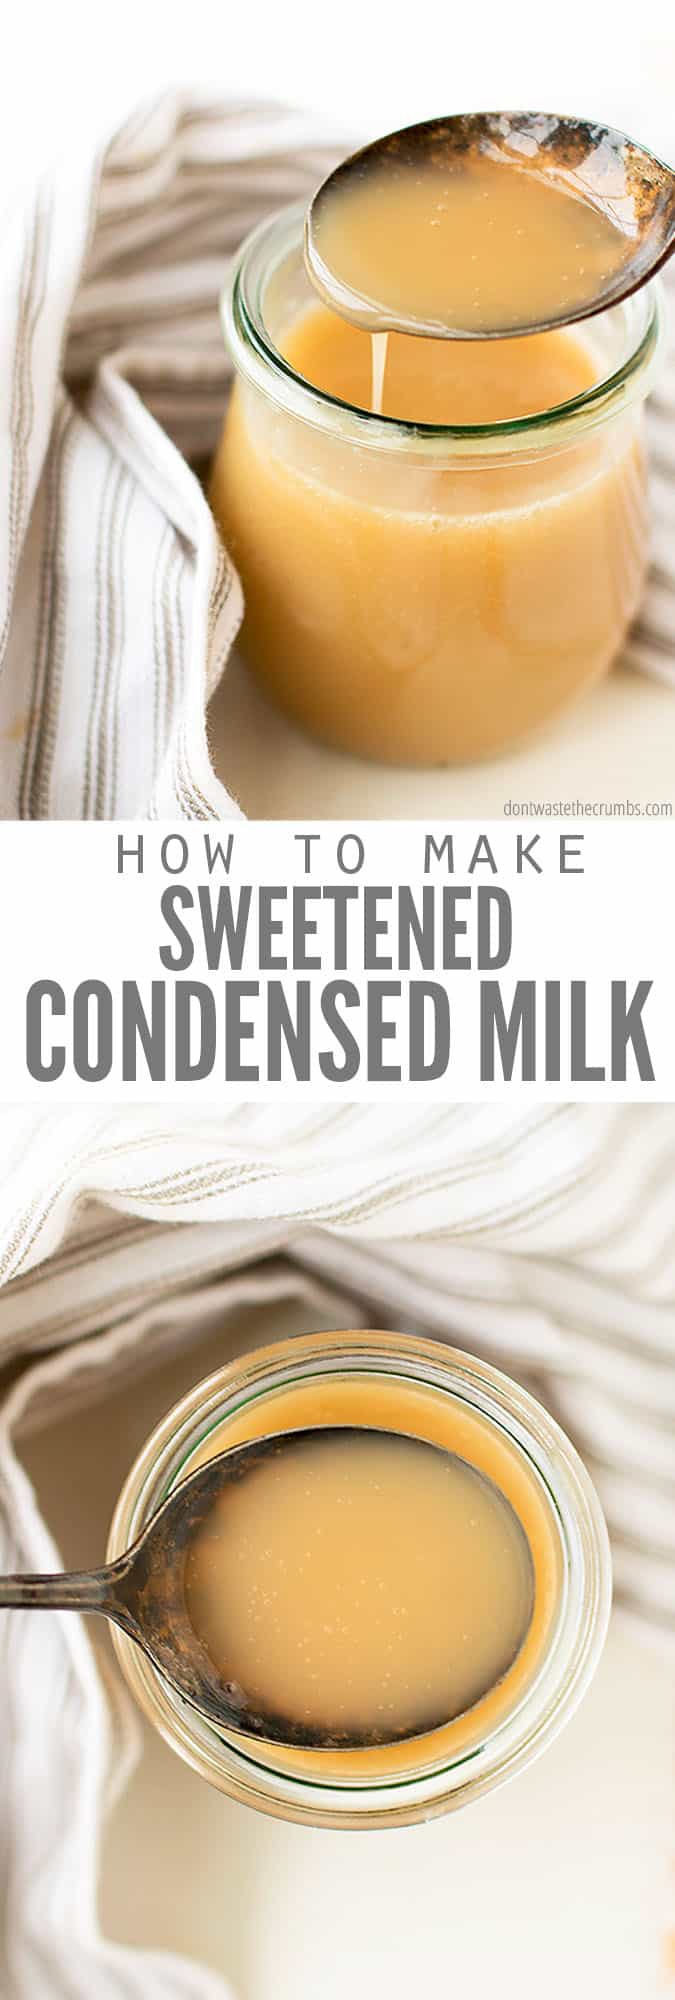 Sweet Potato Pie Recipe Sweetened Condensed Milk